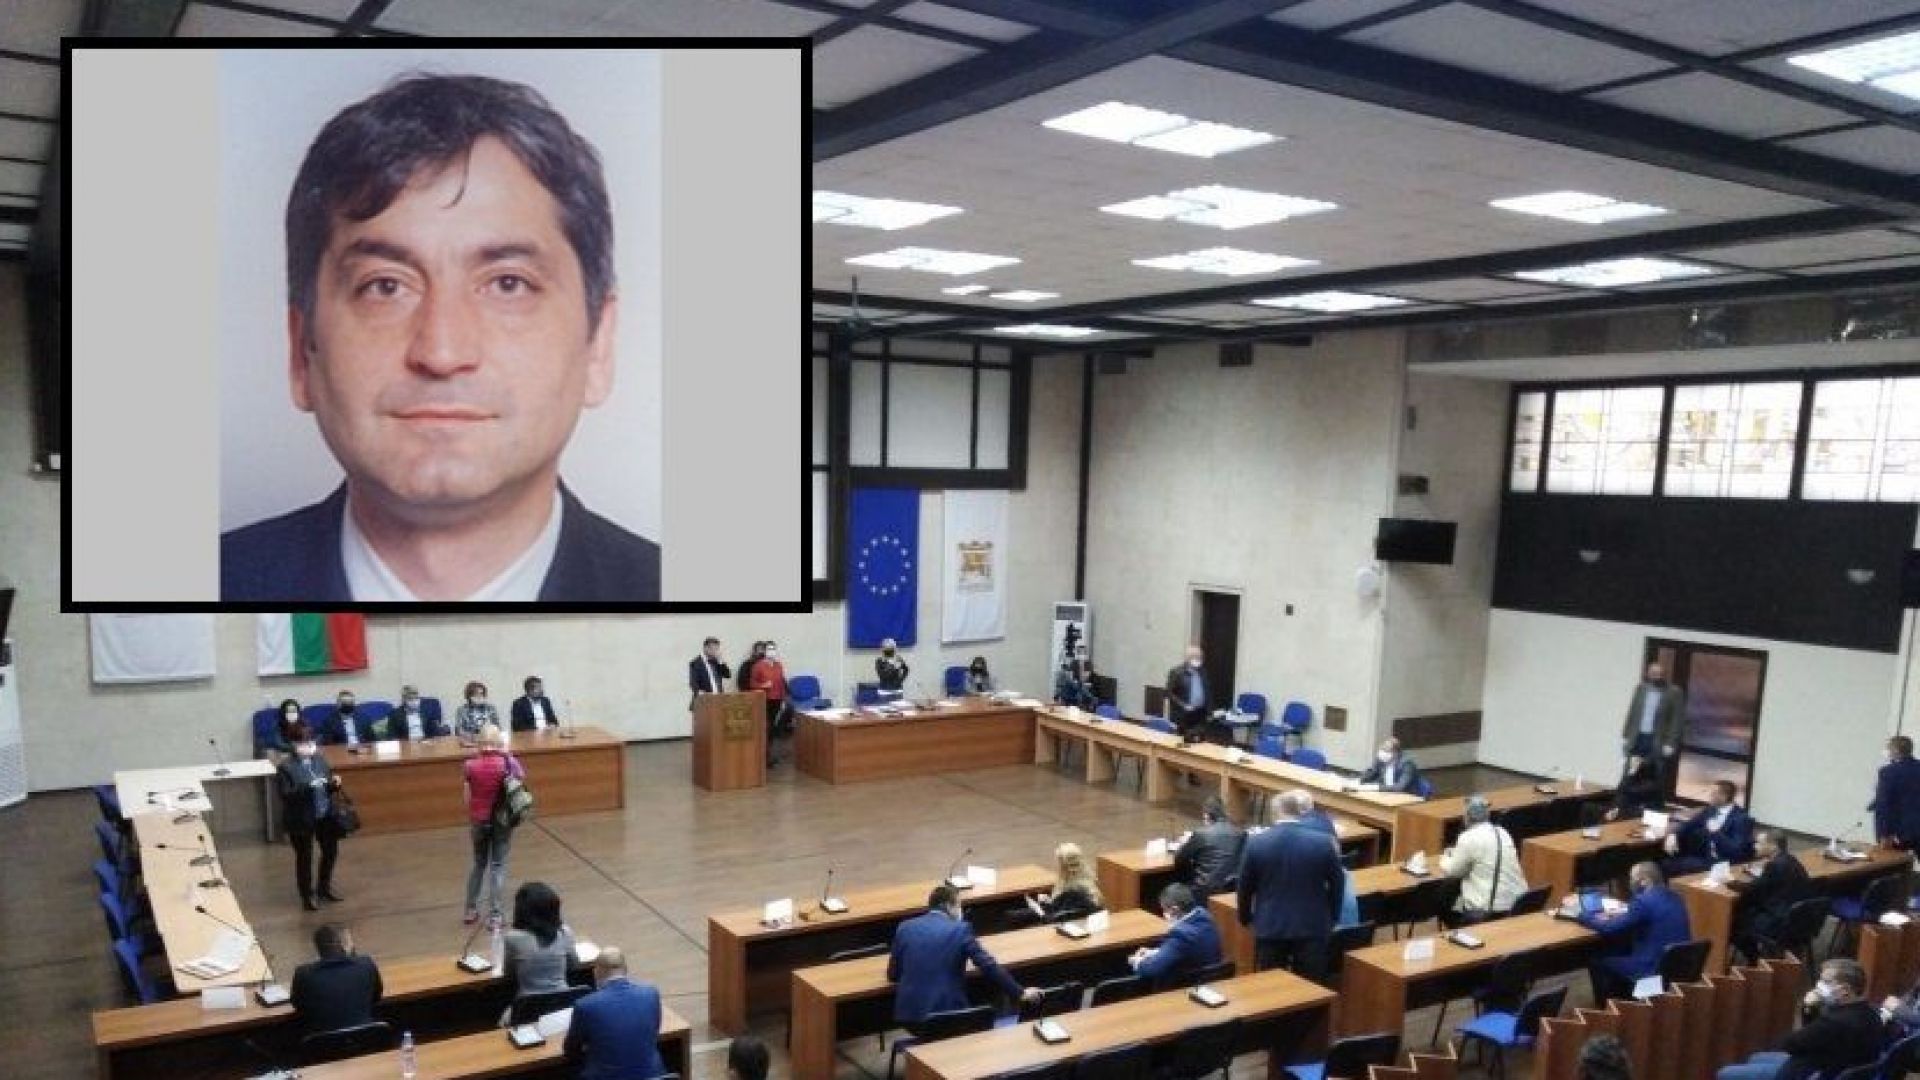 Ясен Попвасилев временно ще изпълнява длъжността кмет на Благоевград. Това